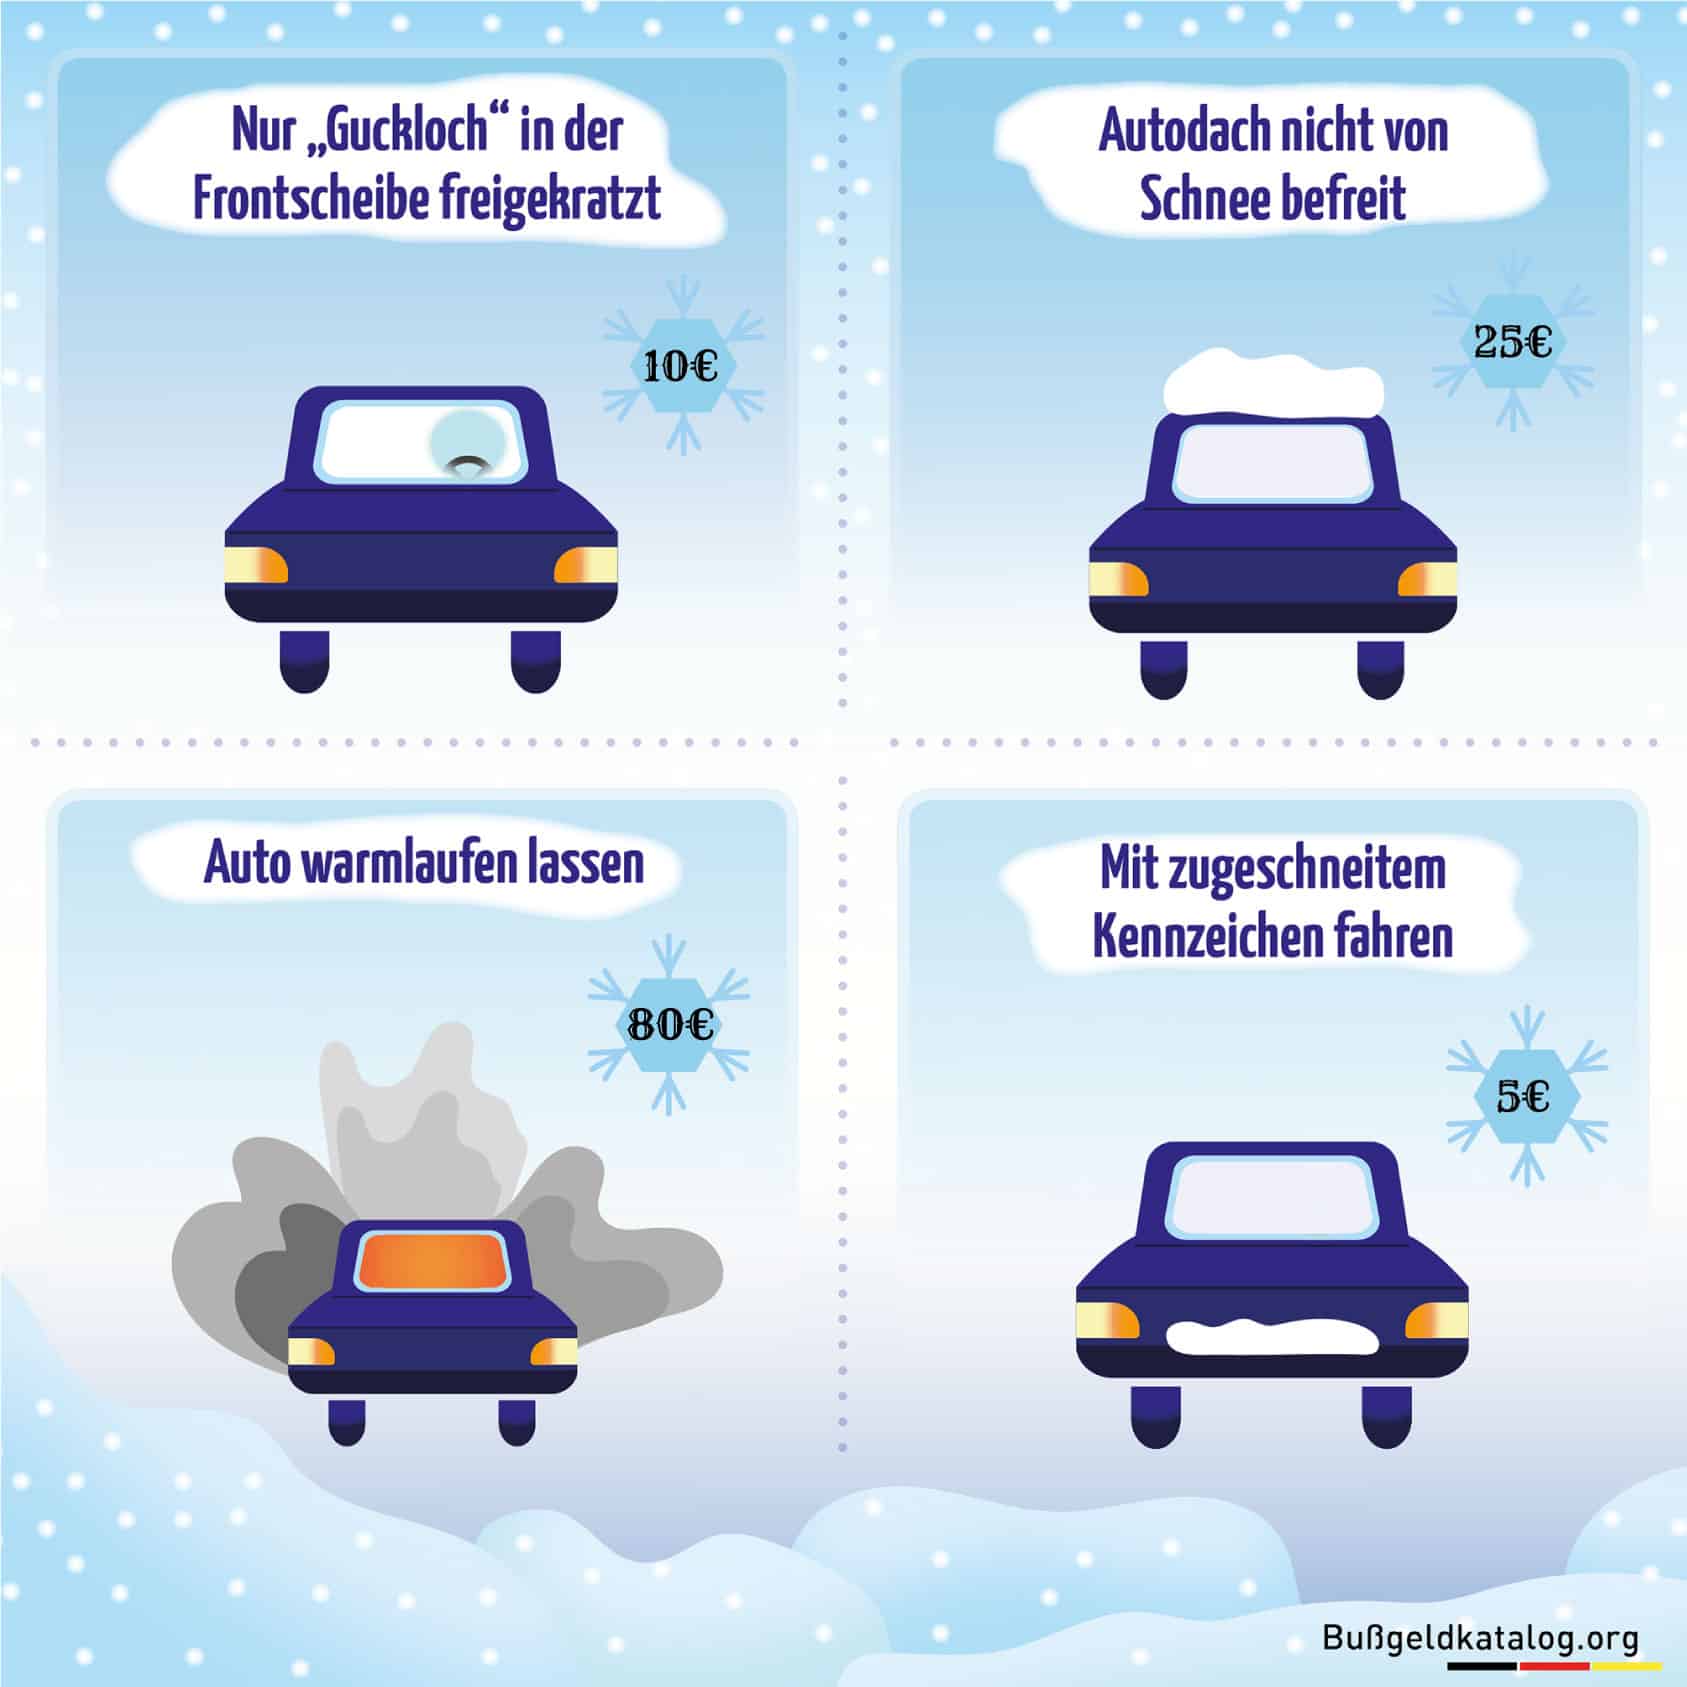 Auto waschen im Winter: Bei Minusgraden schädlich fürs Kfz?